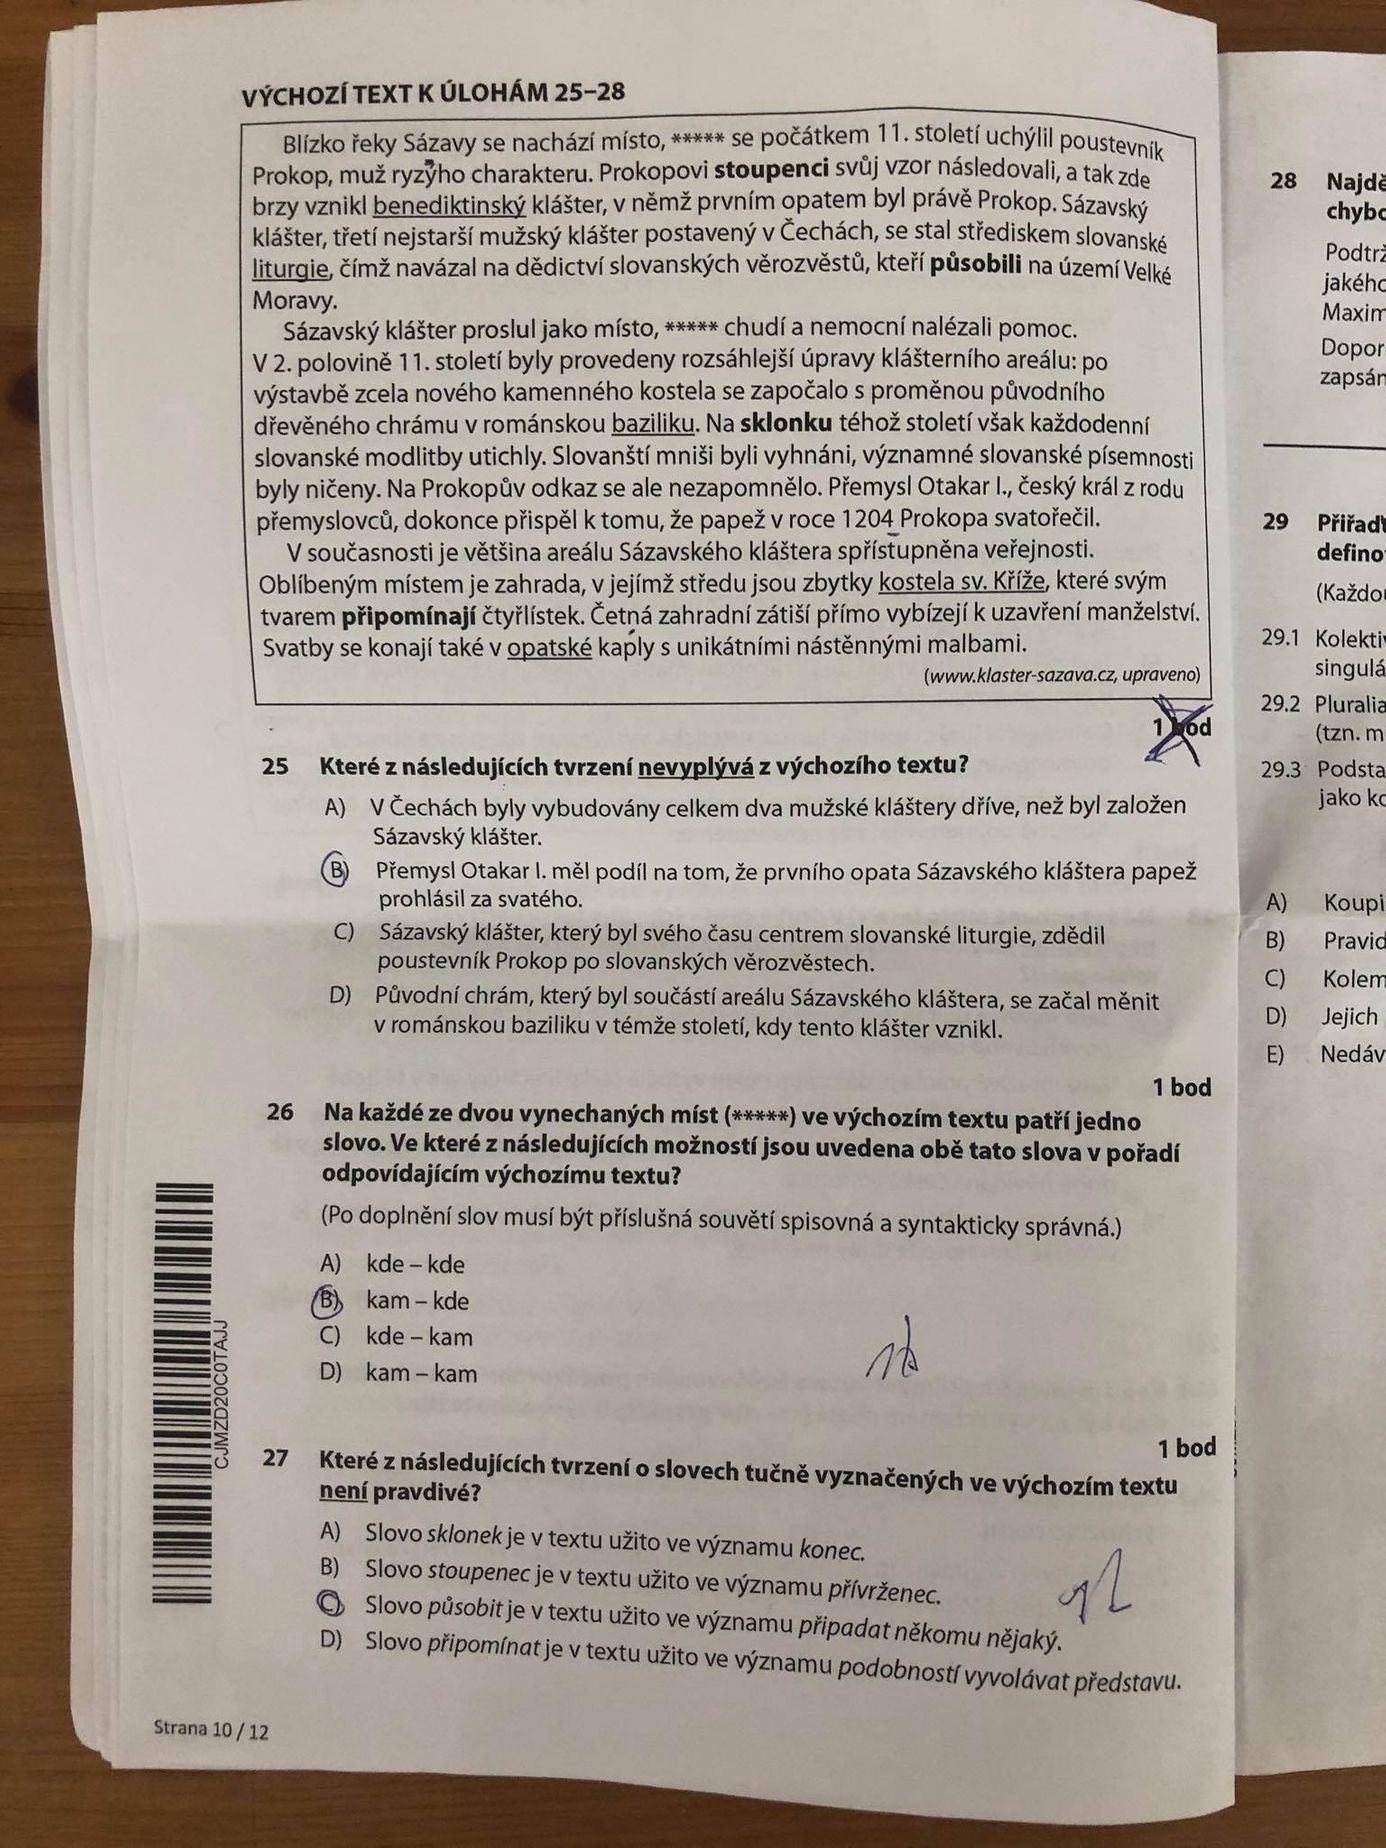 Zadání didaktického testu z češtiny 2020